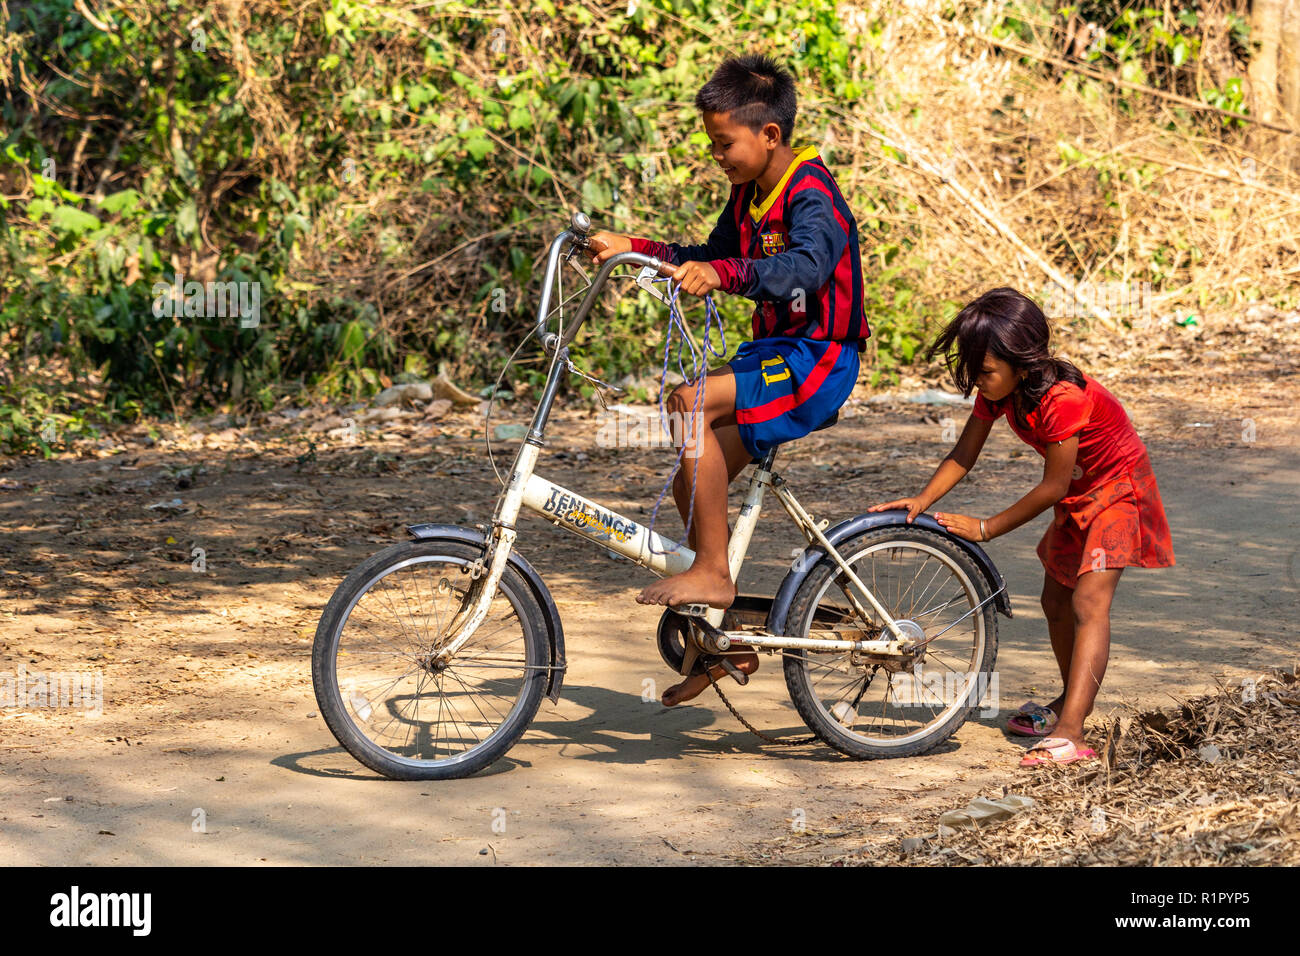 Don Det, Laos - Aprile 22, 2018: Ragazza aiutando un ragazzo a guidare una bicicletta su un percorso in un remoto villaggio del sud Laos Foto Stock